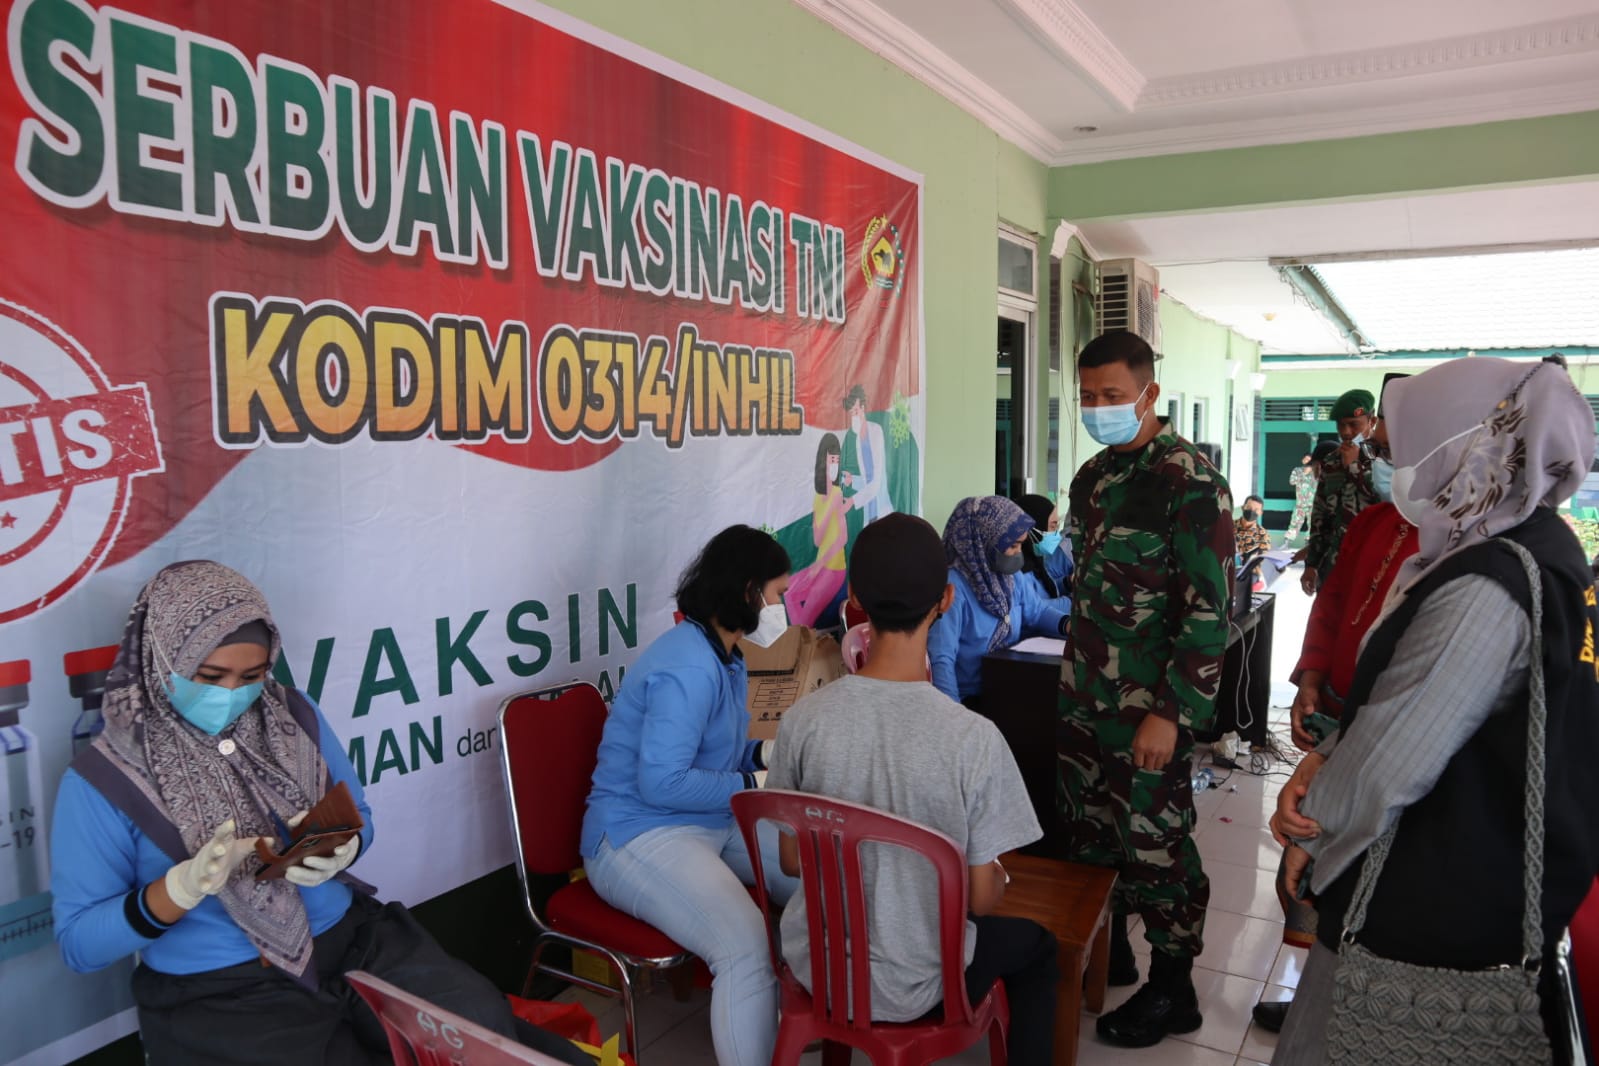 Kodim 0314/Inhil Kembali melaksanakan Serbuan Vaksinasi TNI Tahap I